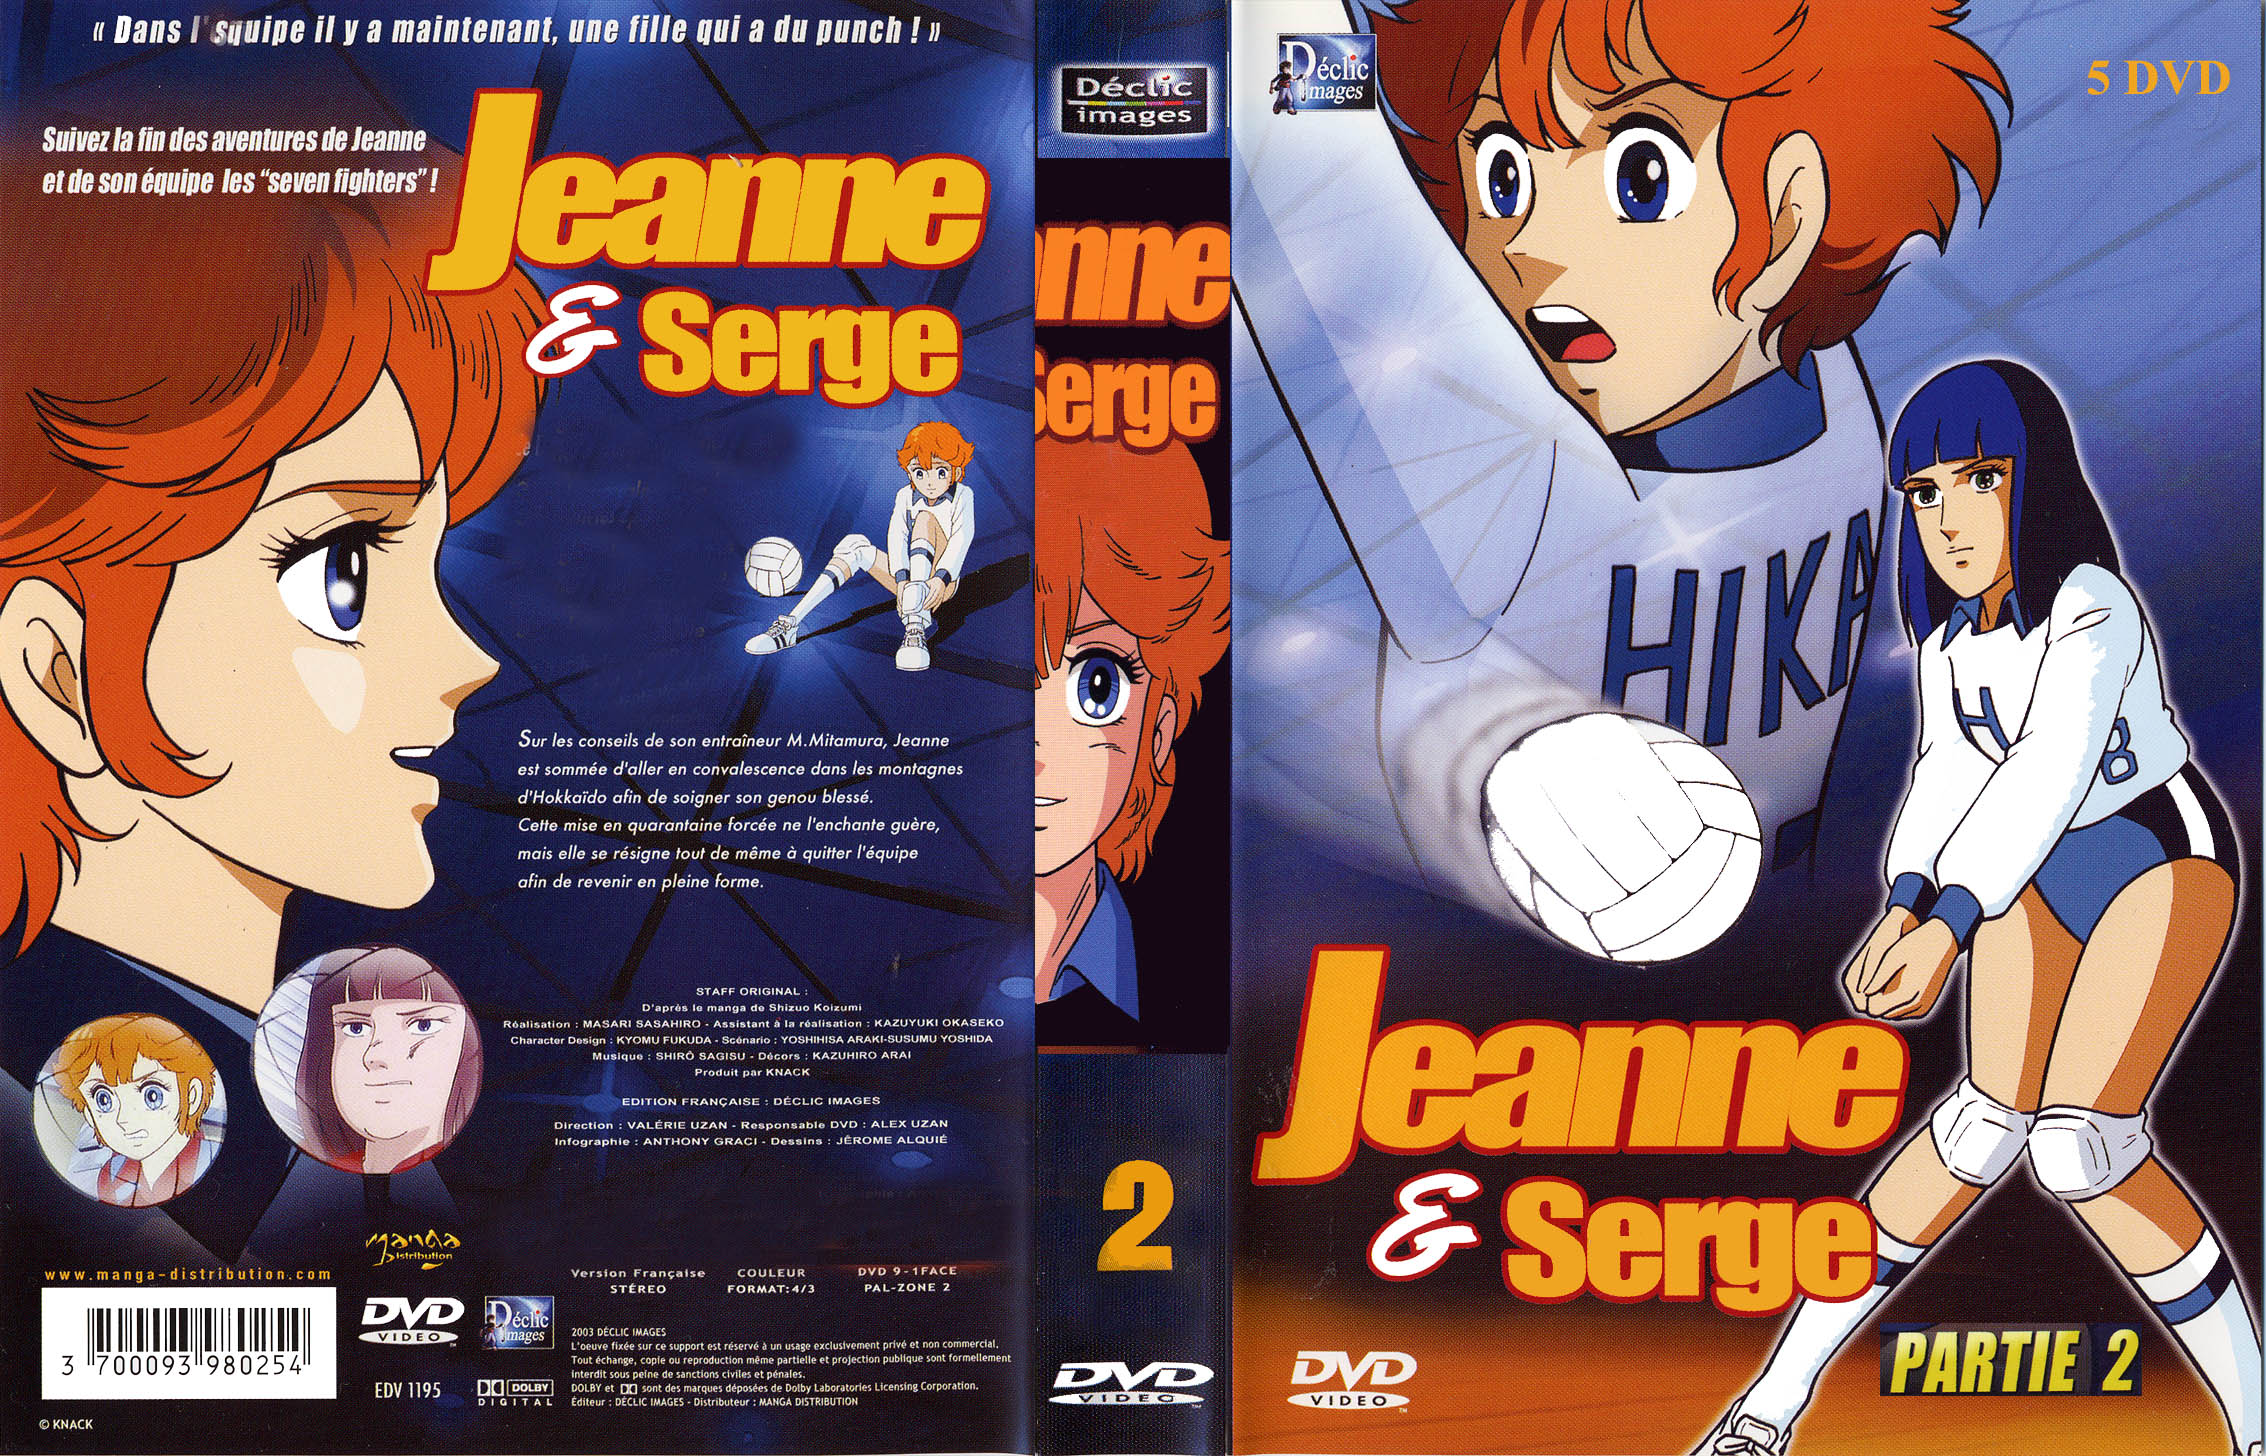 Jaquette DVD Jeanne et Serge coffret vol 2